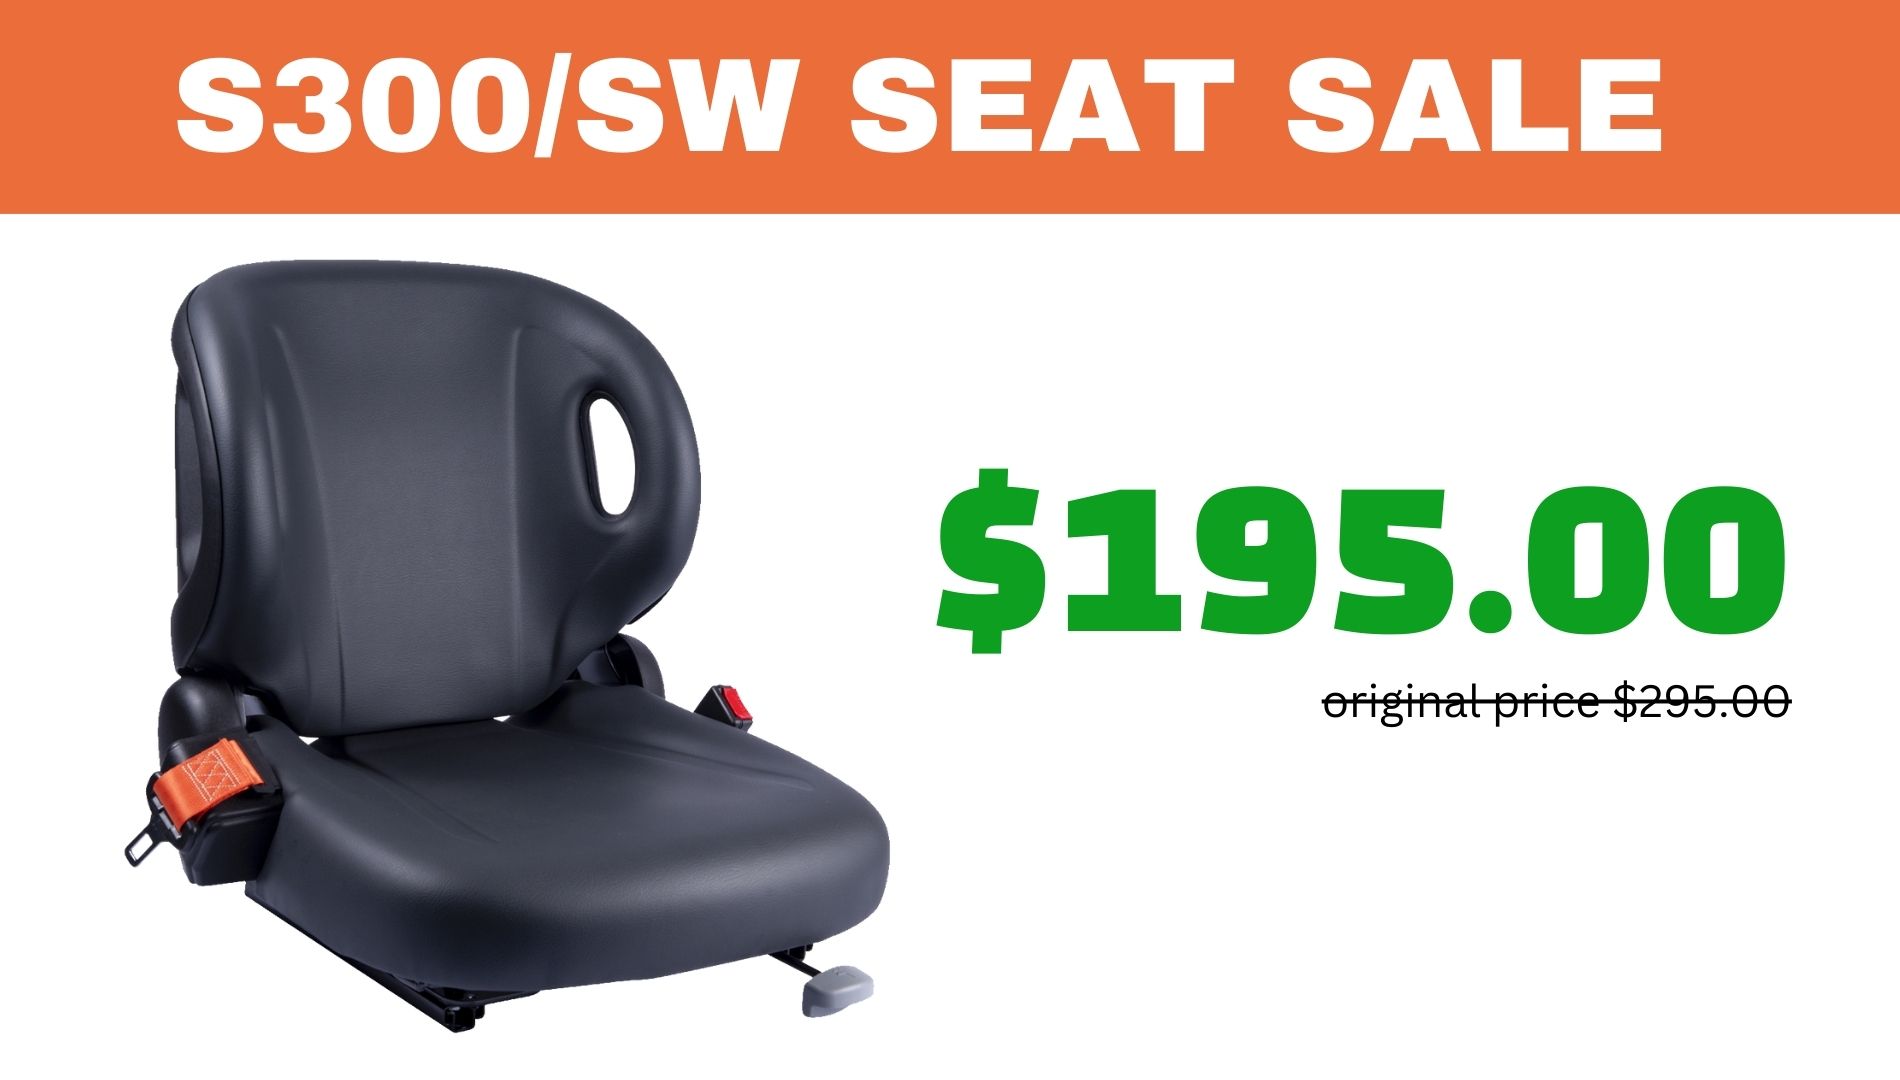 Blog post - S300/SW Forklift Seat Sale